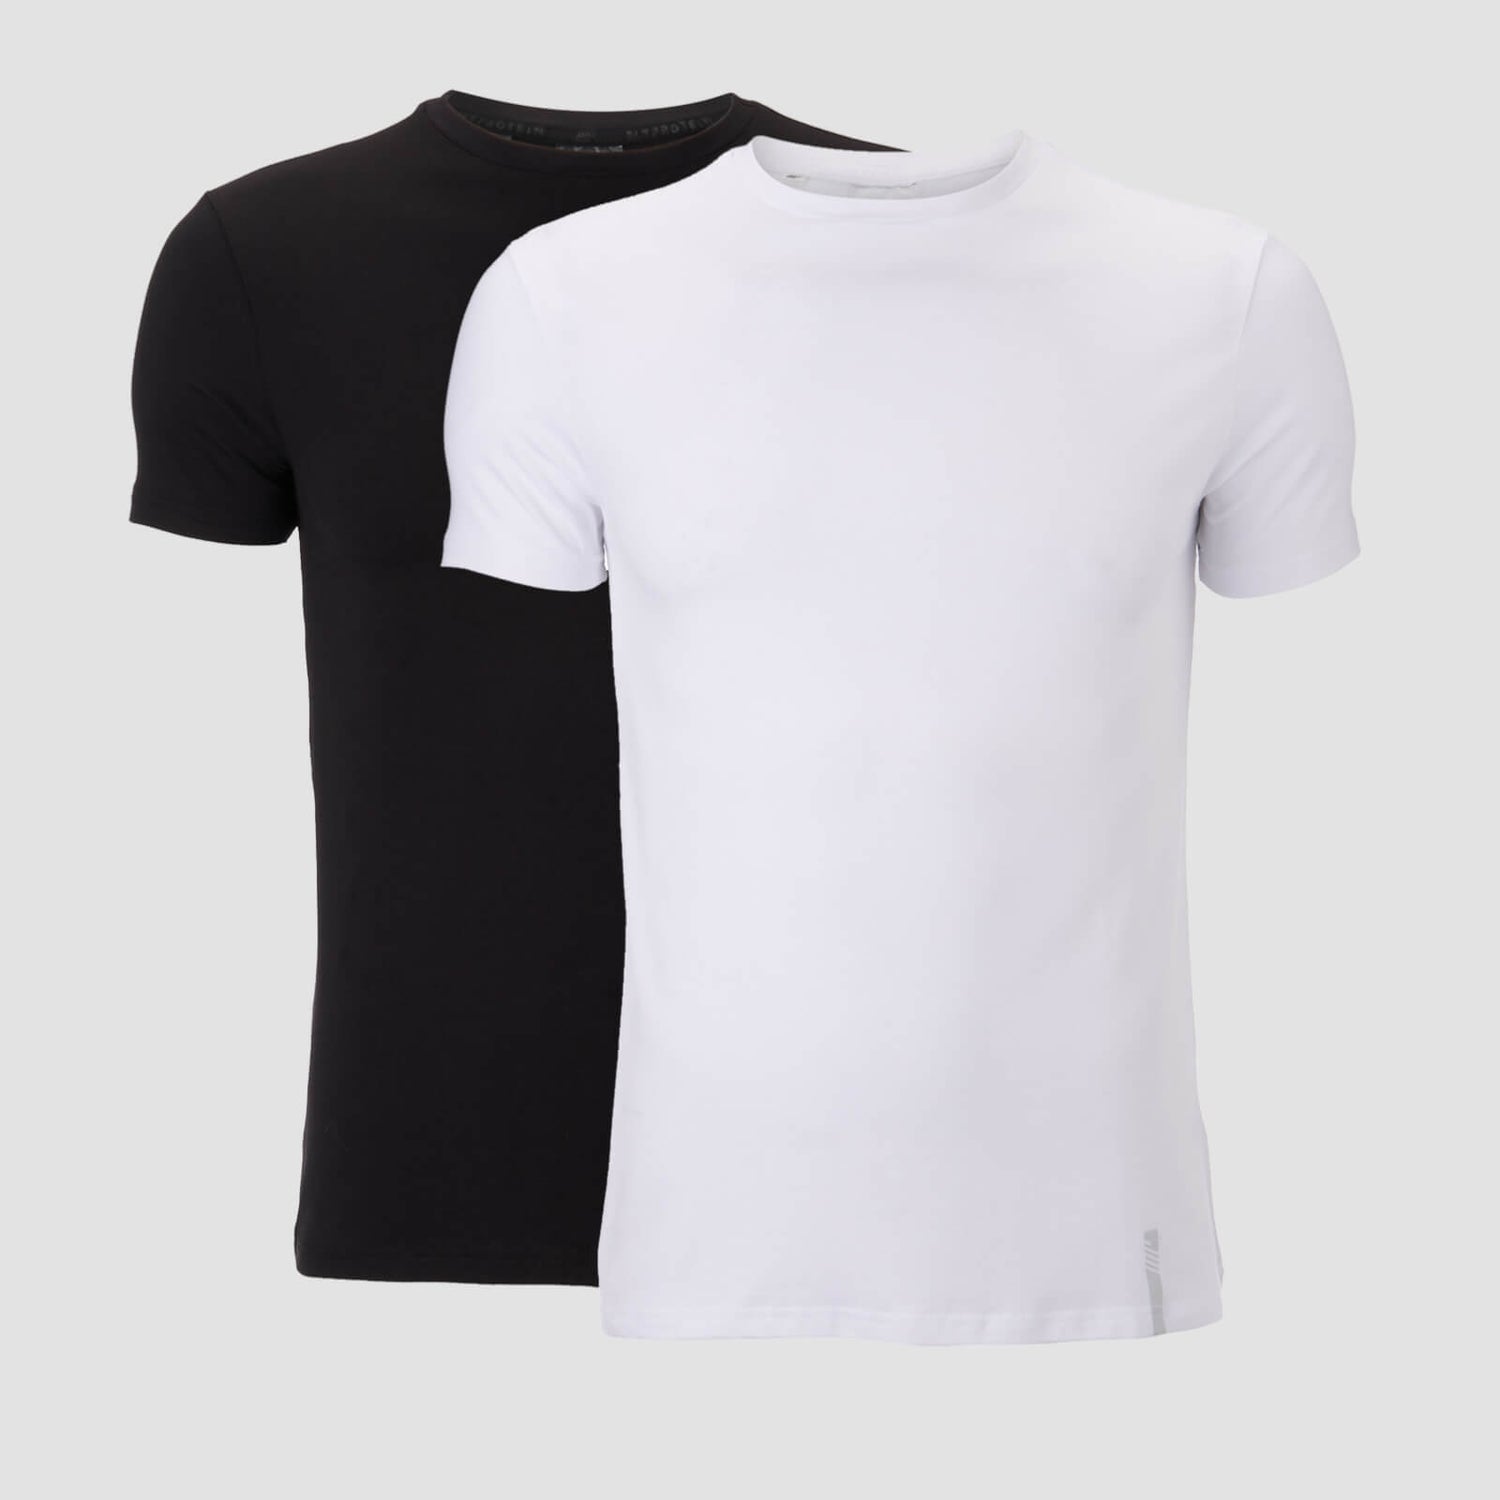 Camiseta Luxe Classic Crew (pack de 2) - Negro y Blanco - M